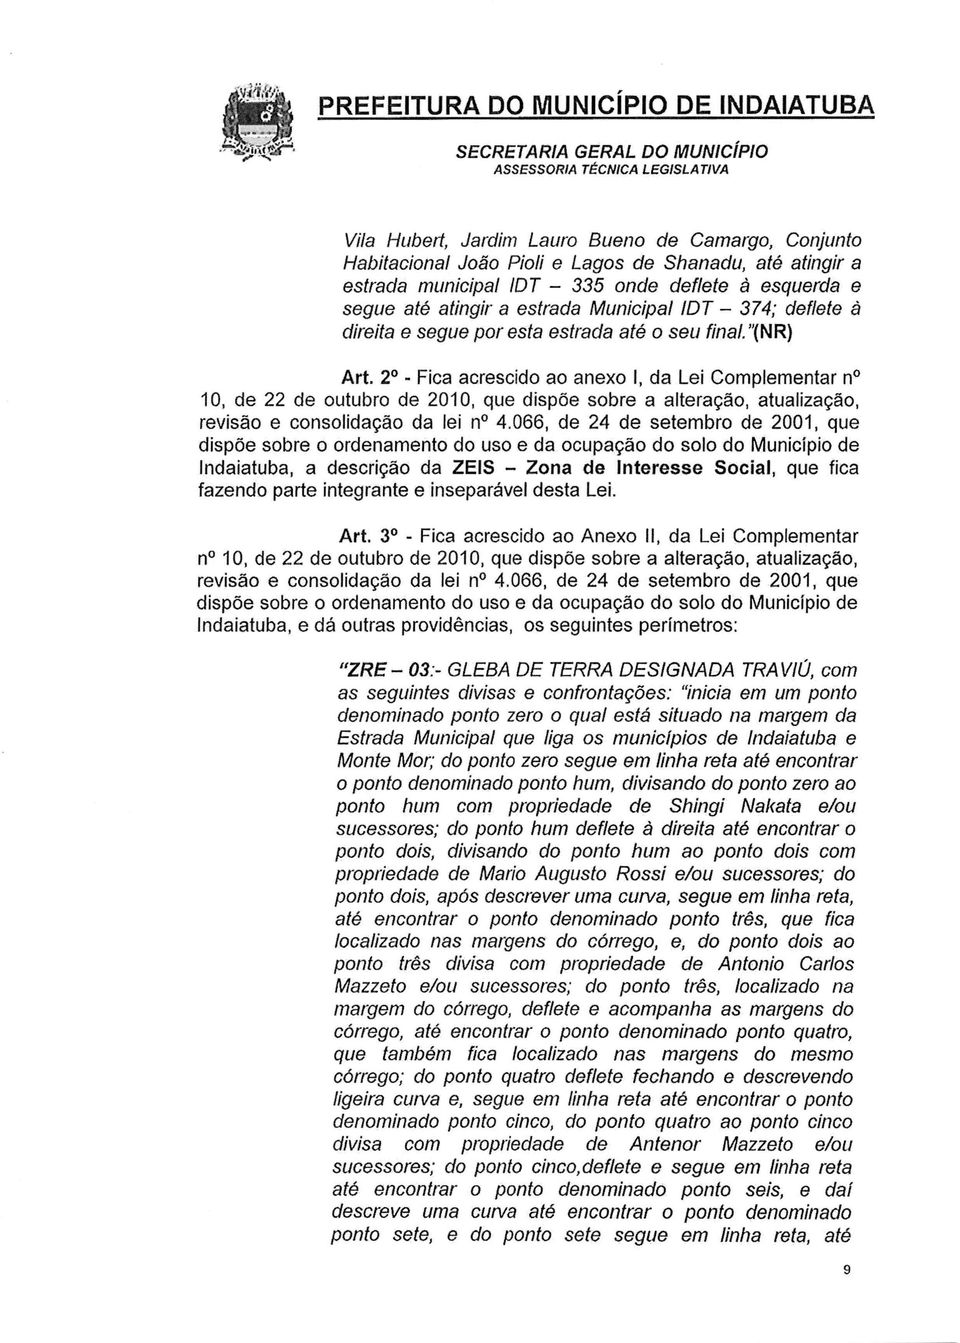 2 - Fica acrescido ao anexo I, Lei Complementar n 10, de 22 de outubro de 2010, que dispõe sobre a alteração, atualização, revisão e consolição lei n 4.